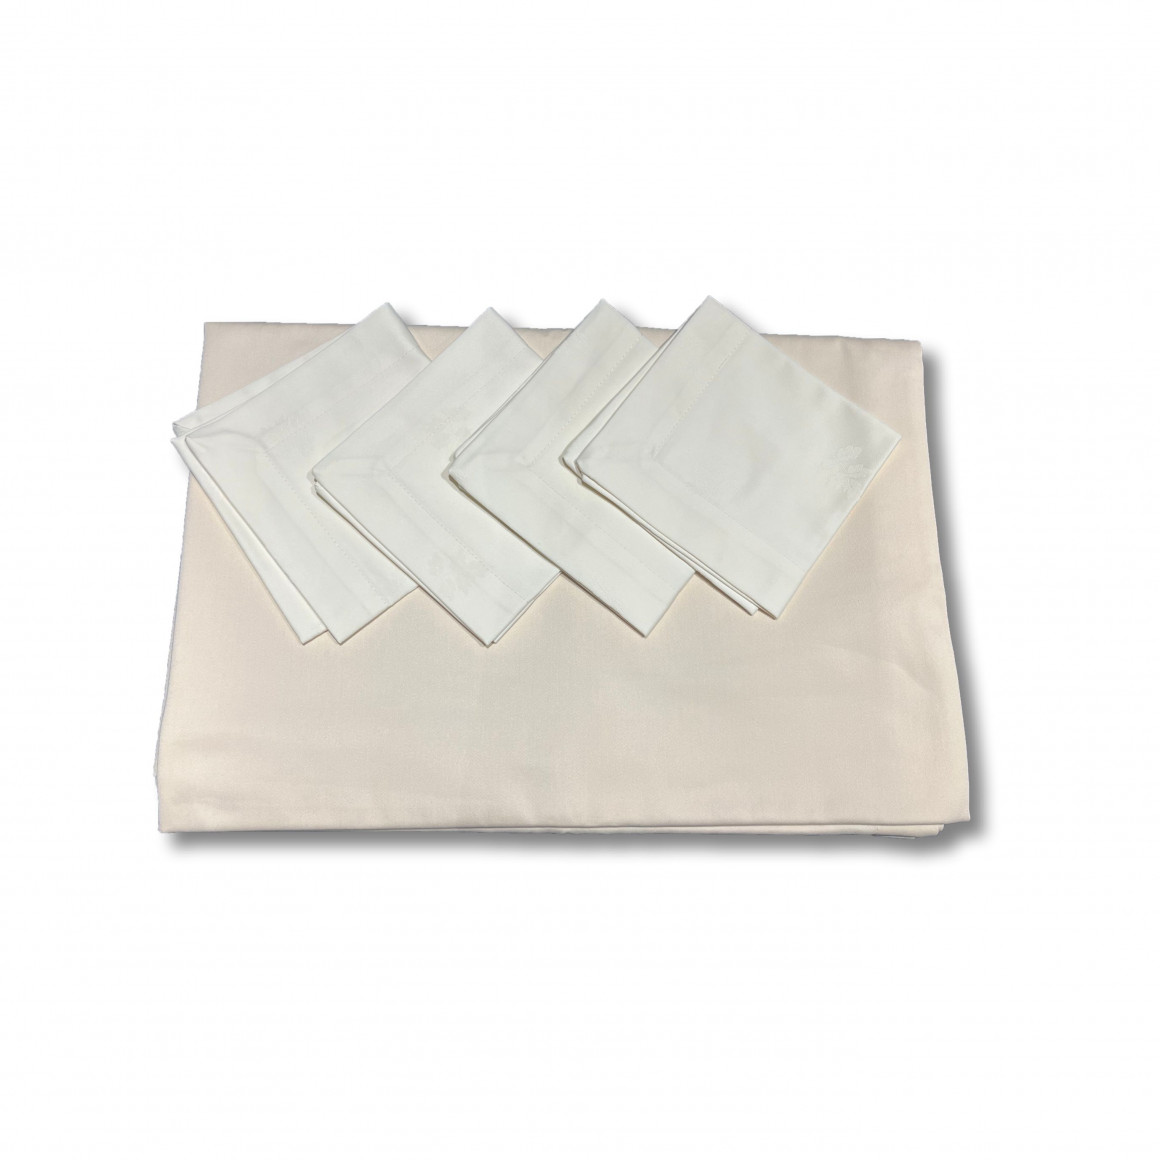 Tablecloth set wth 4 napkins